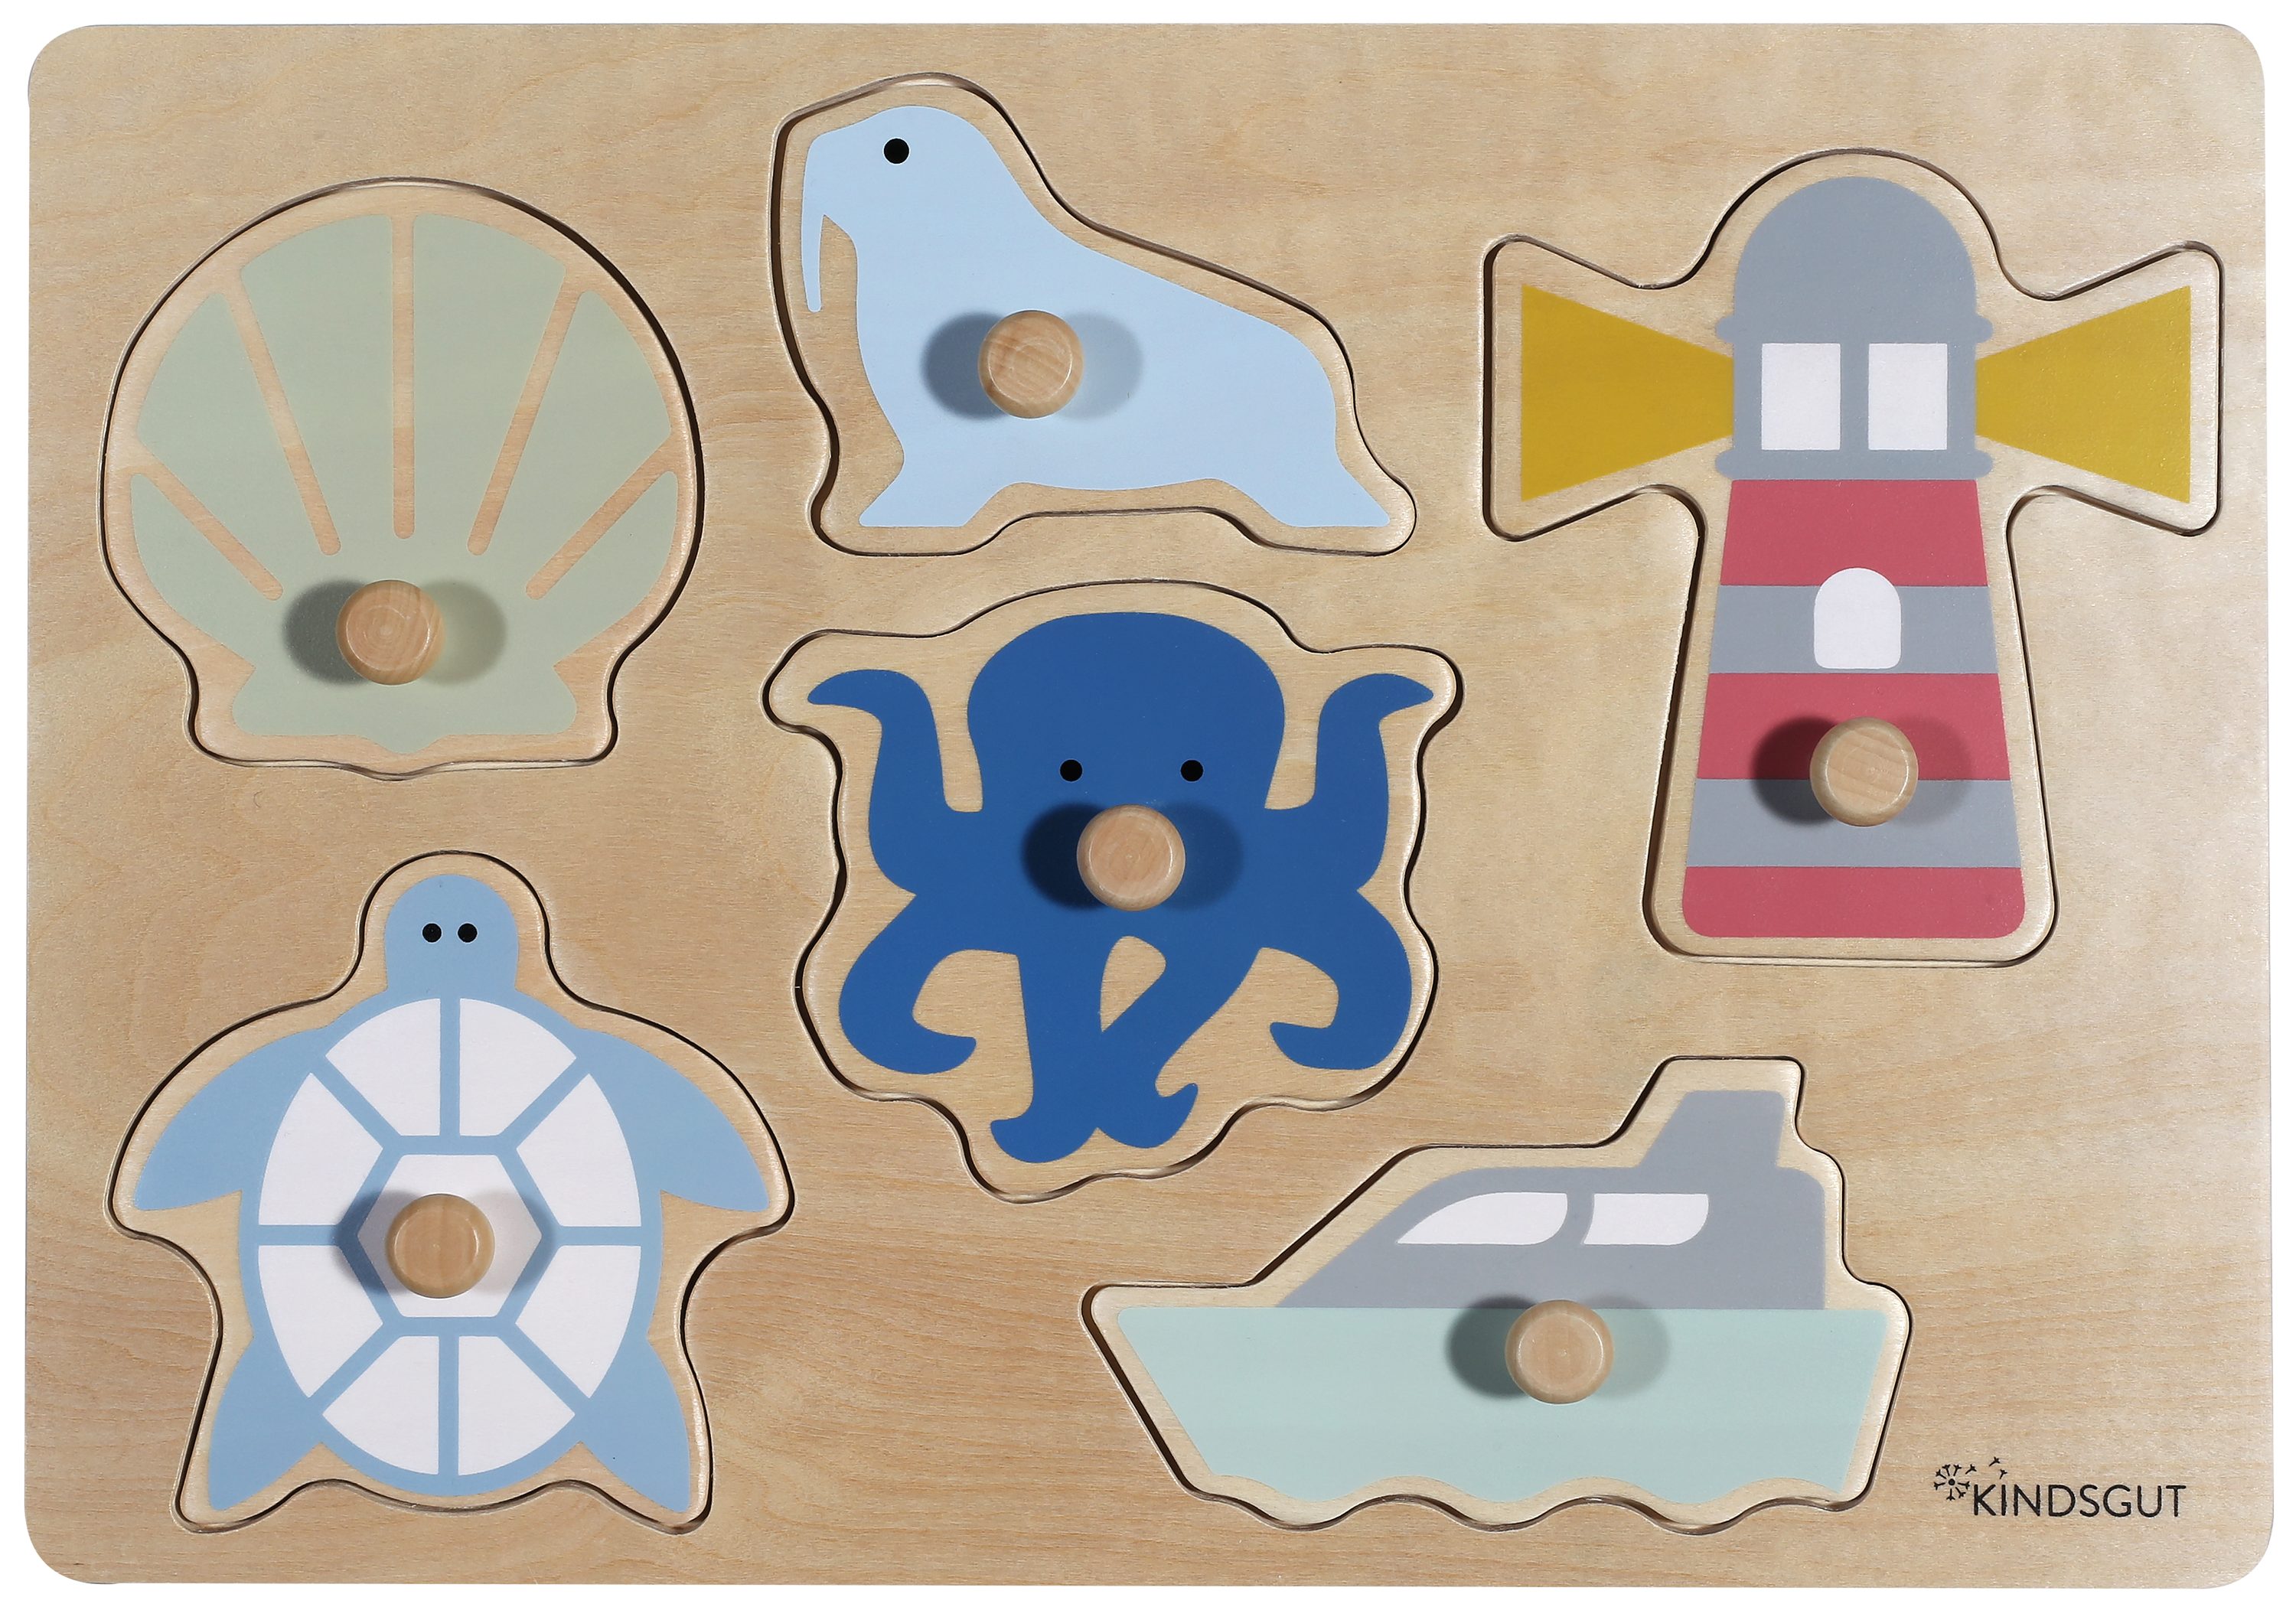 Kindsgut Steckpuzzle, Puzzleteile, aus Holz, Puzzle für Klein-Kinder,  Spielzeug aus hochwertiger Qualität in schlichtem Design und dezenten  Farben für Spiel-Spaß, schönes Geschenk, Ozean online kaufen | OTTO